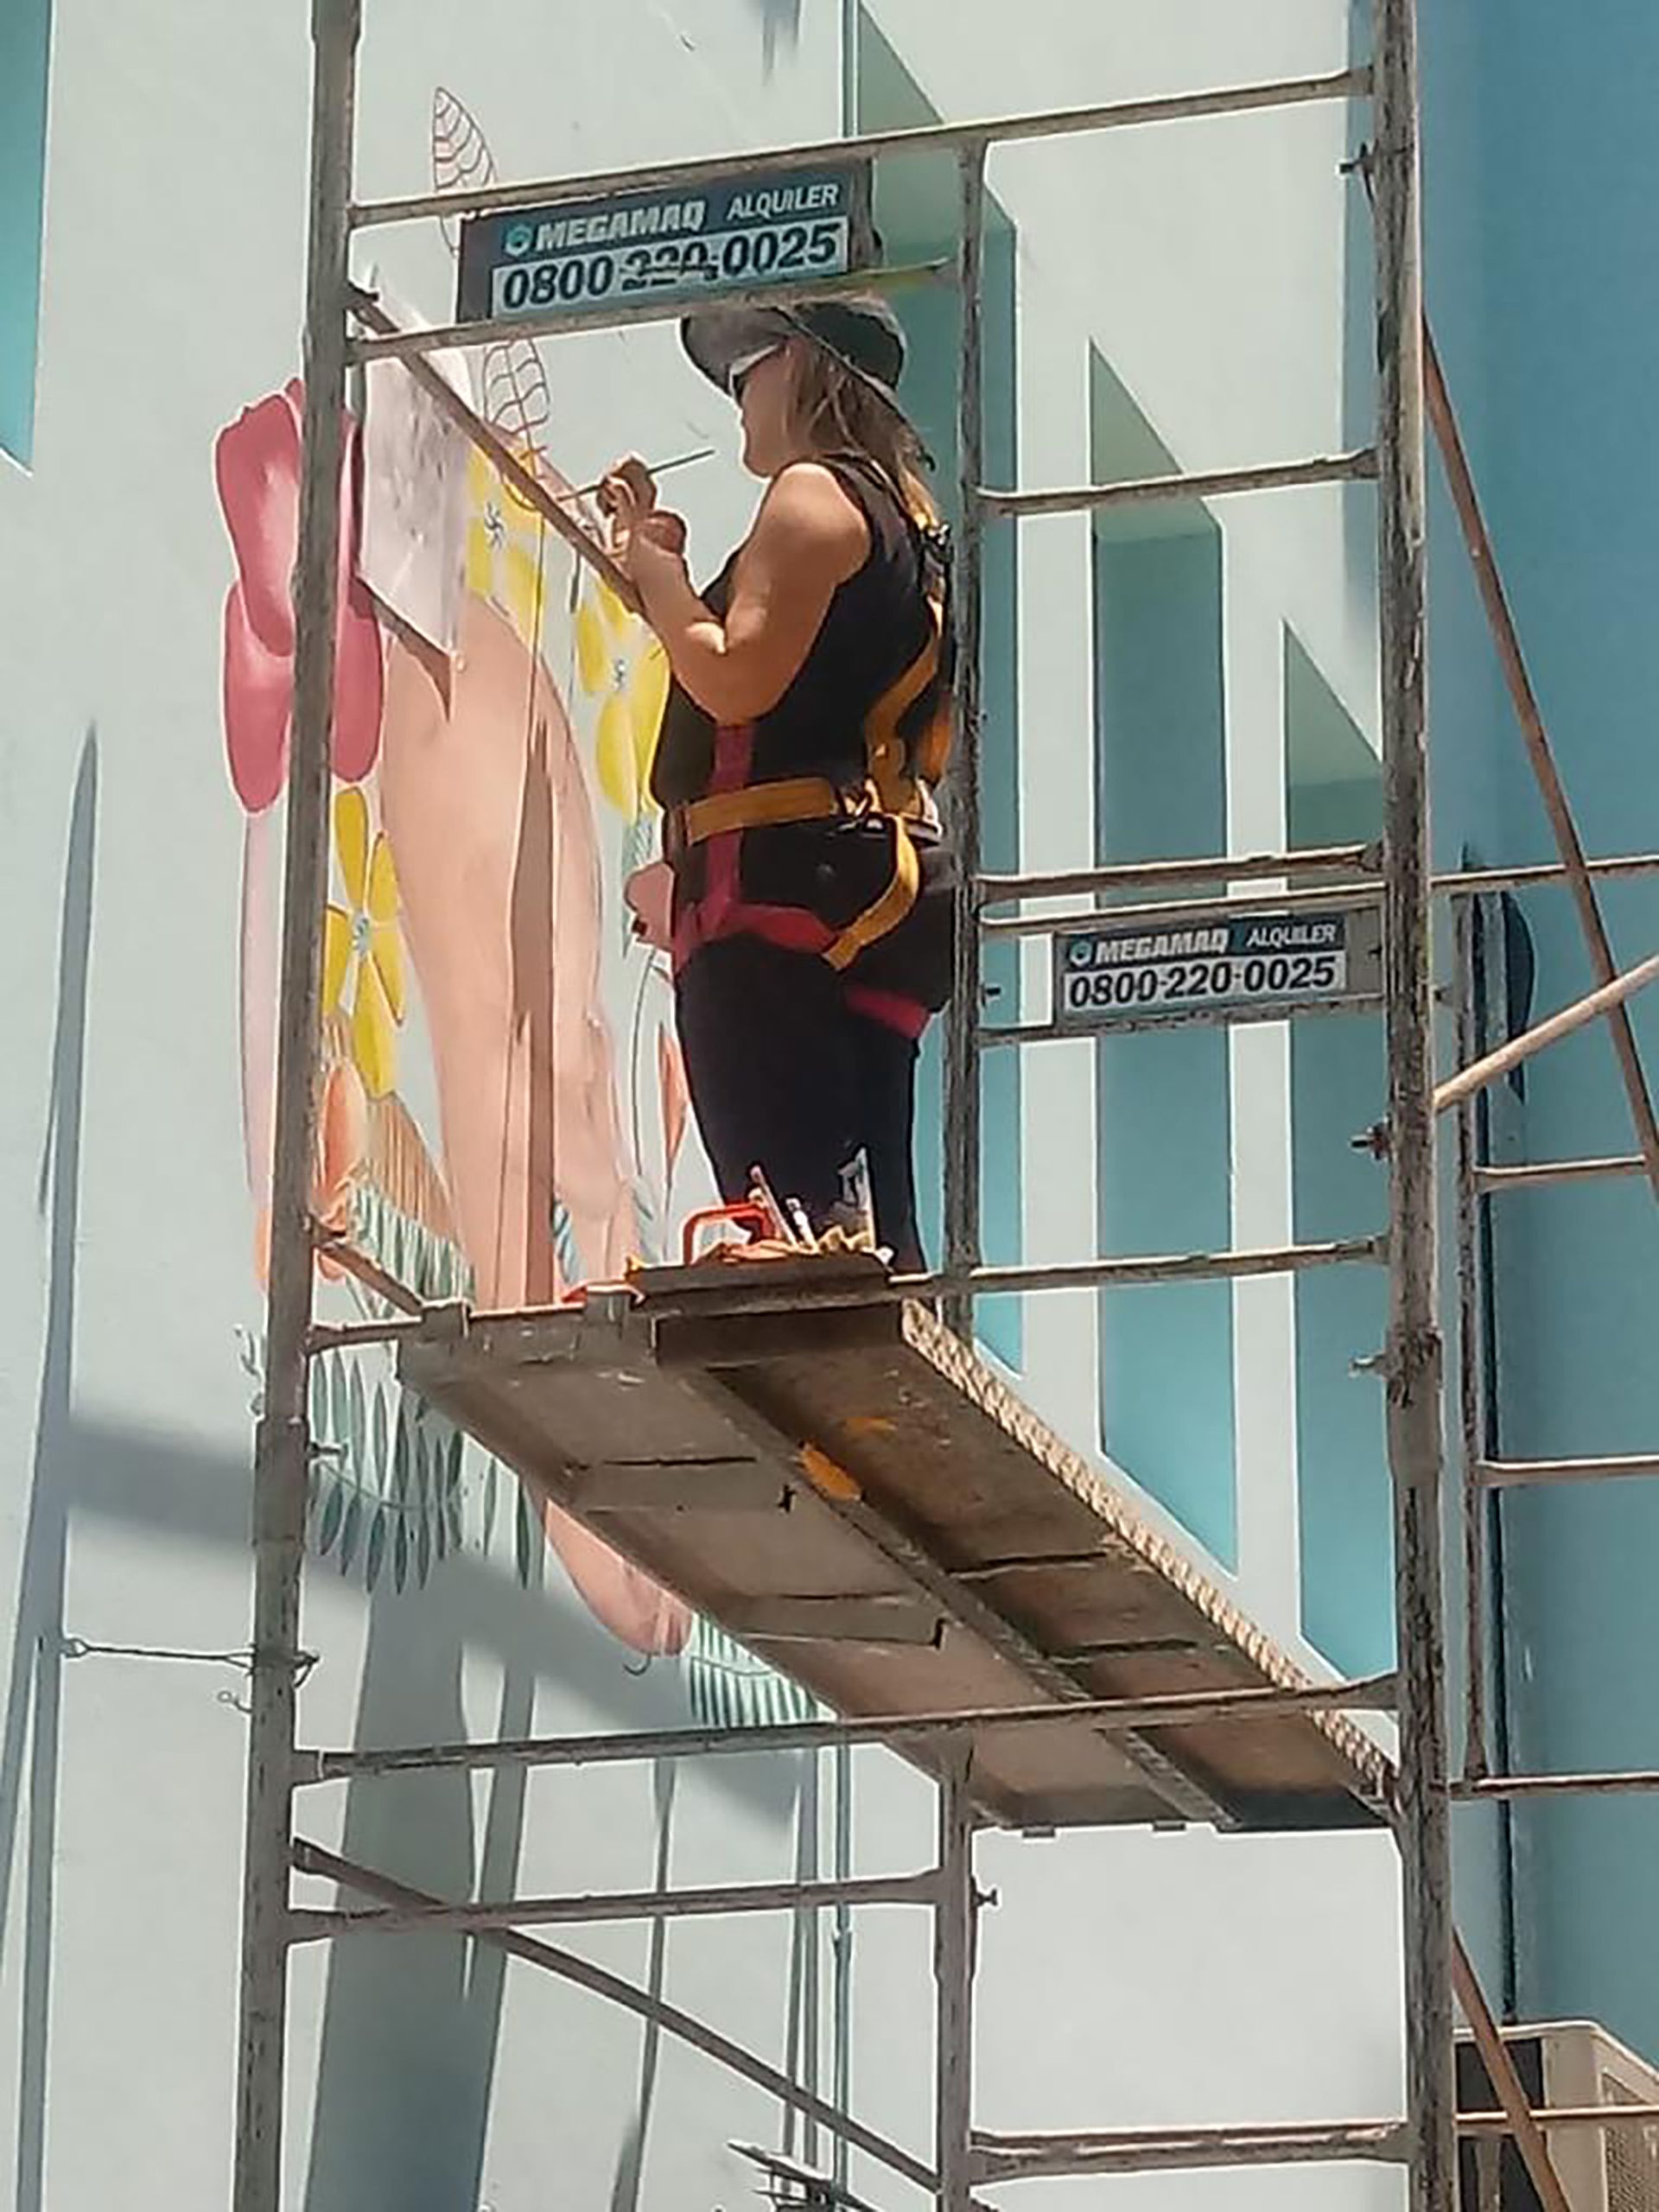 La artista, durante la realización del mural